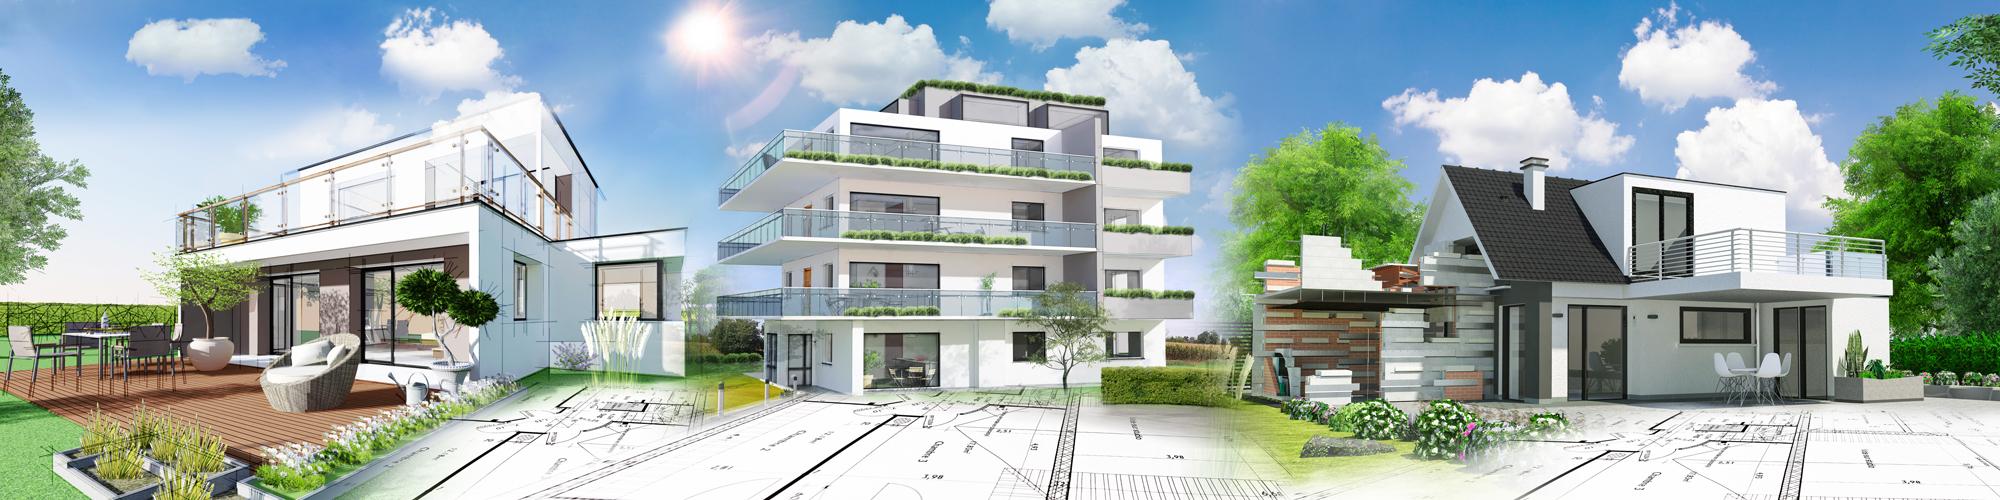 WINDISCH GmbH Bauunternehmung    